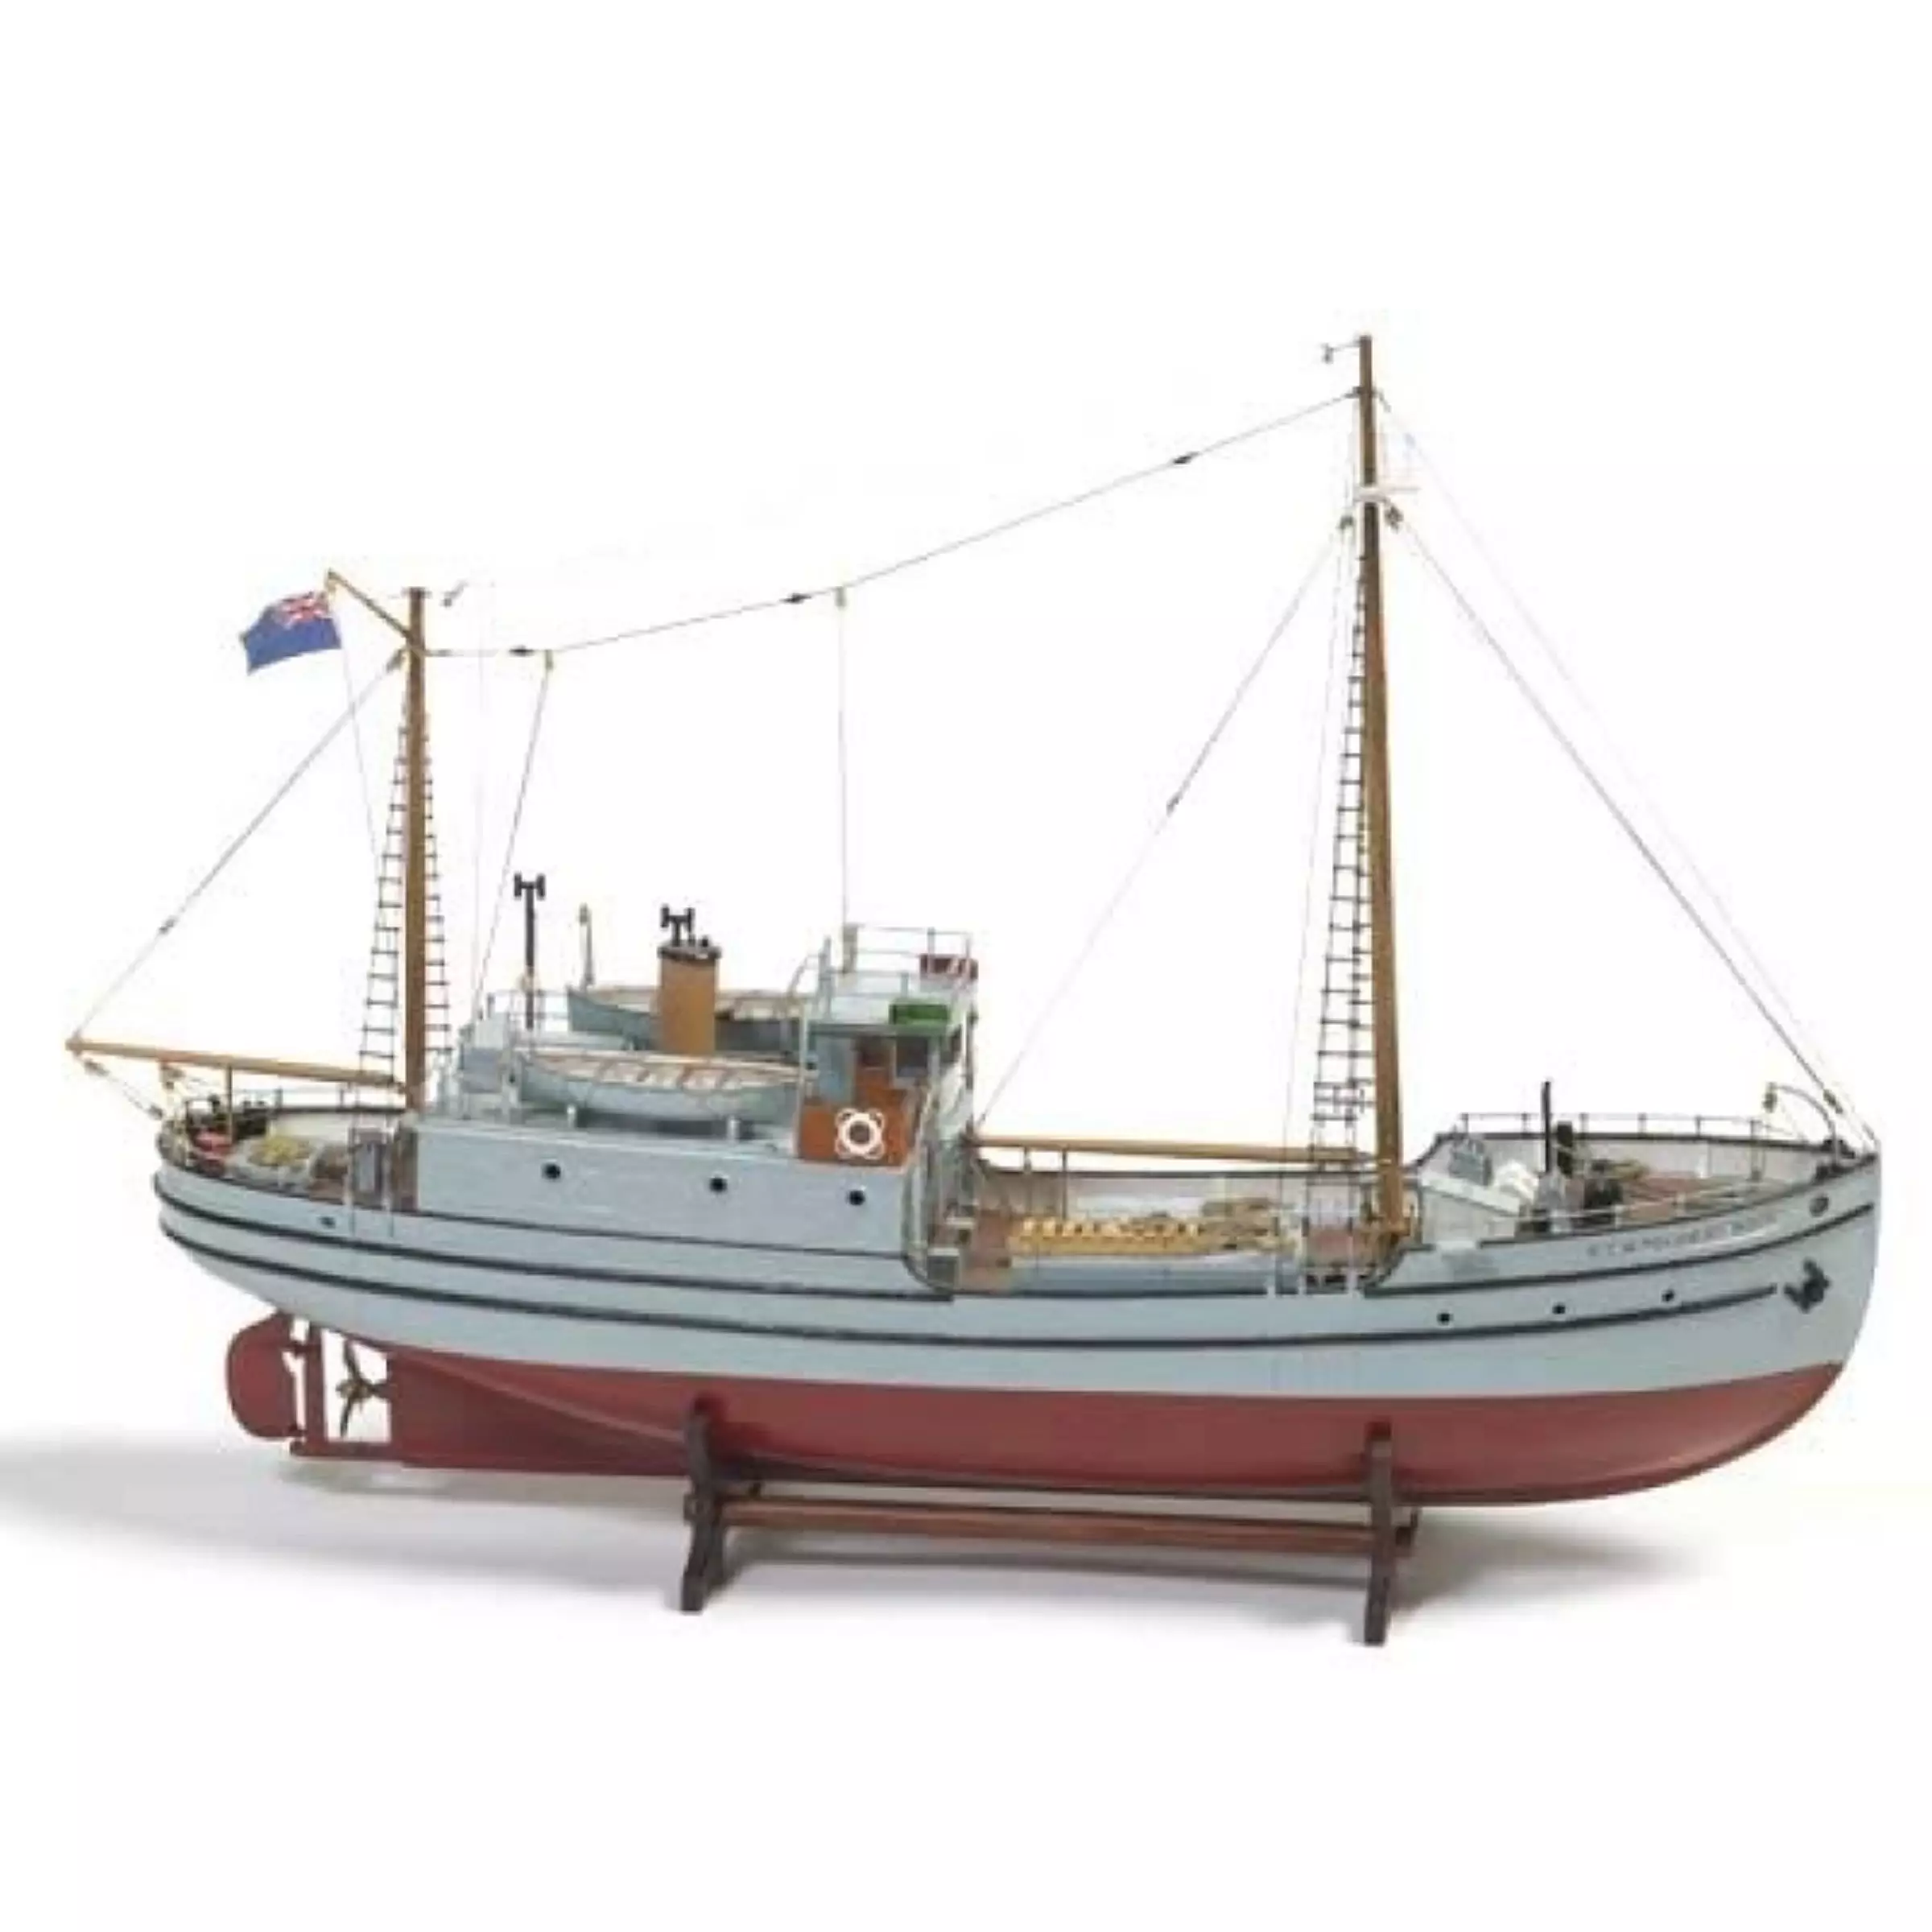 RCMP St Roch Model Boat Kit - Billing Boats (B605)